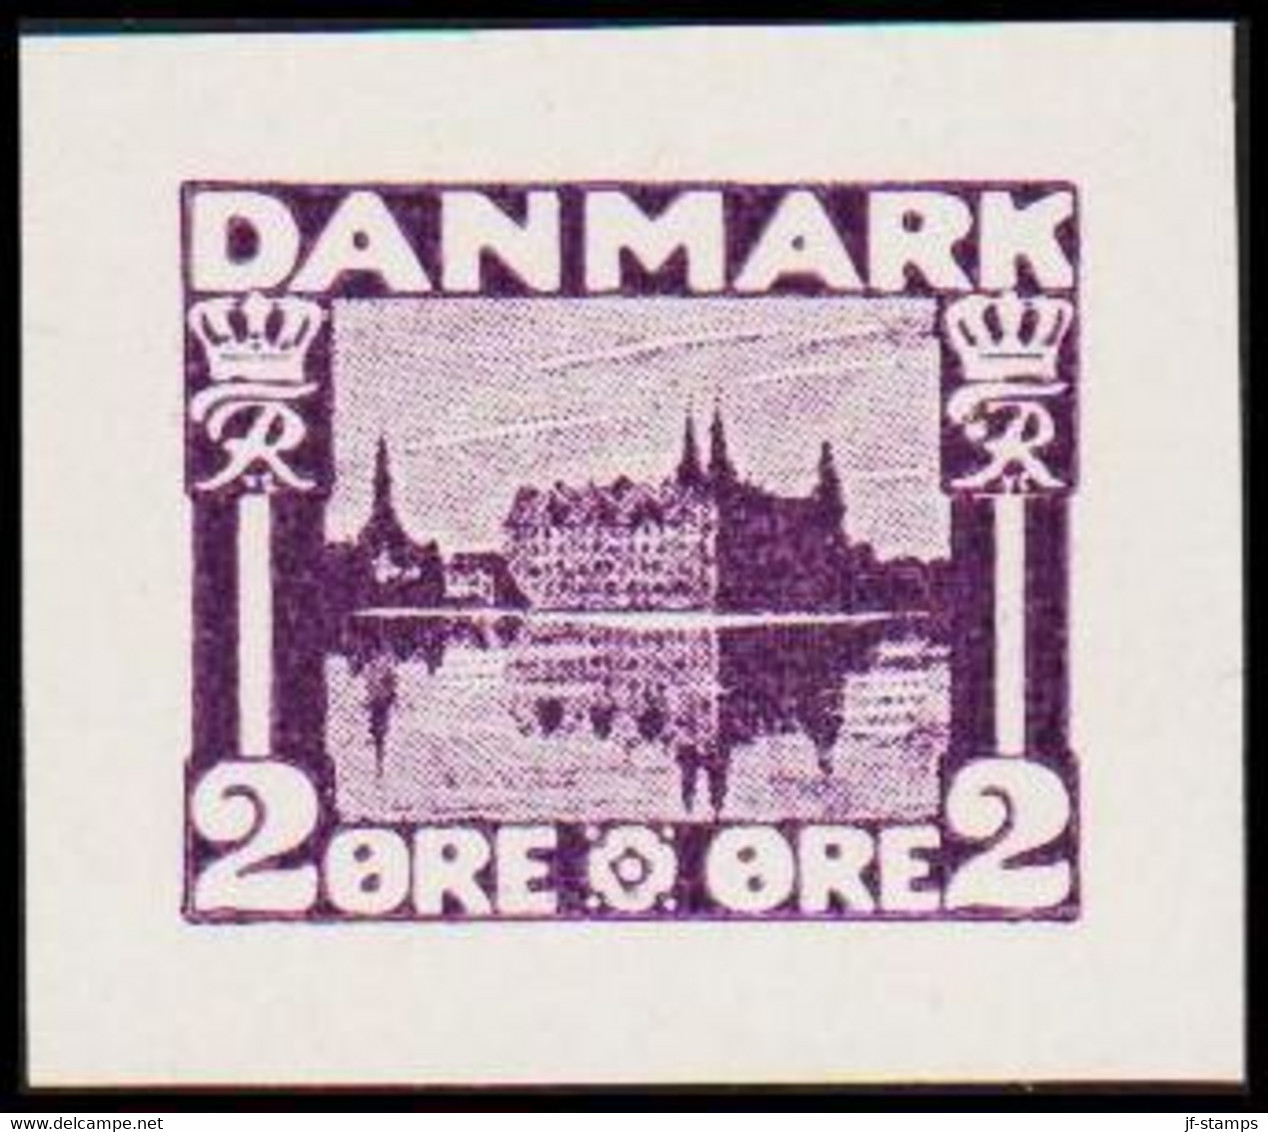 1930. DANMARK. Essay. København - Frederiksborg Slot. 2 øre. - JF525405 - Ensayos & Reimpresiones